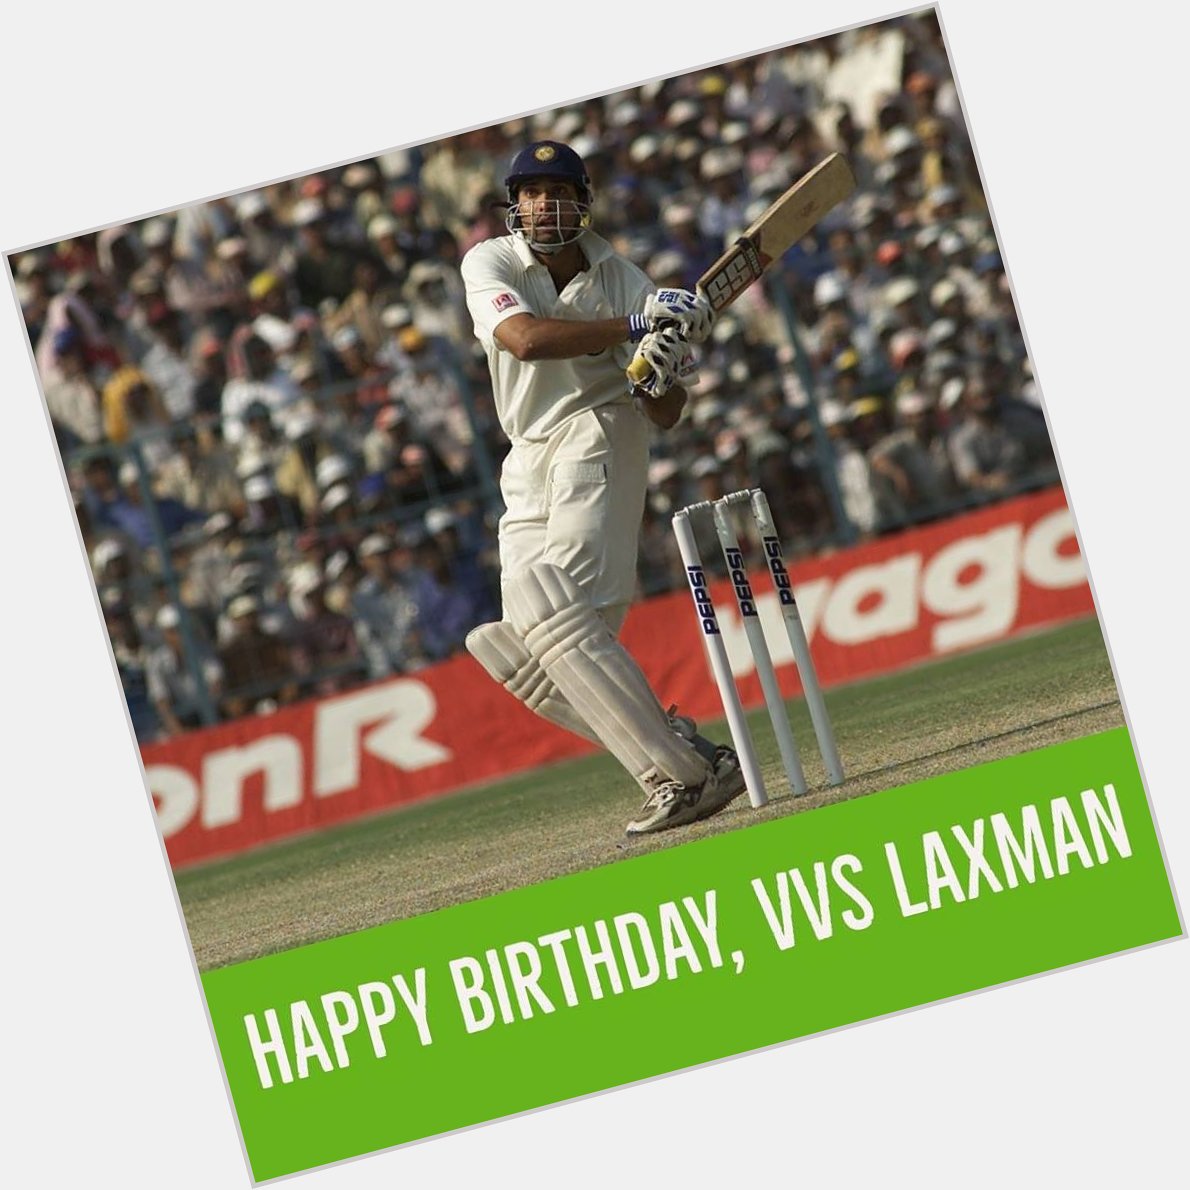 Happy birthday V.V.S Laxman  